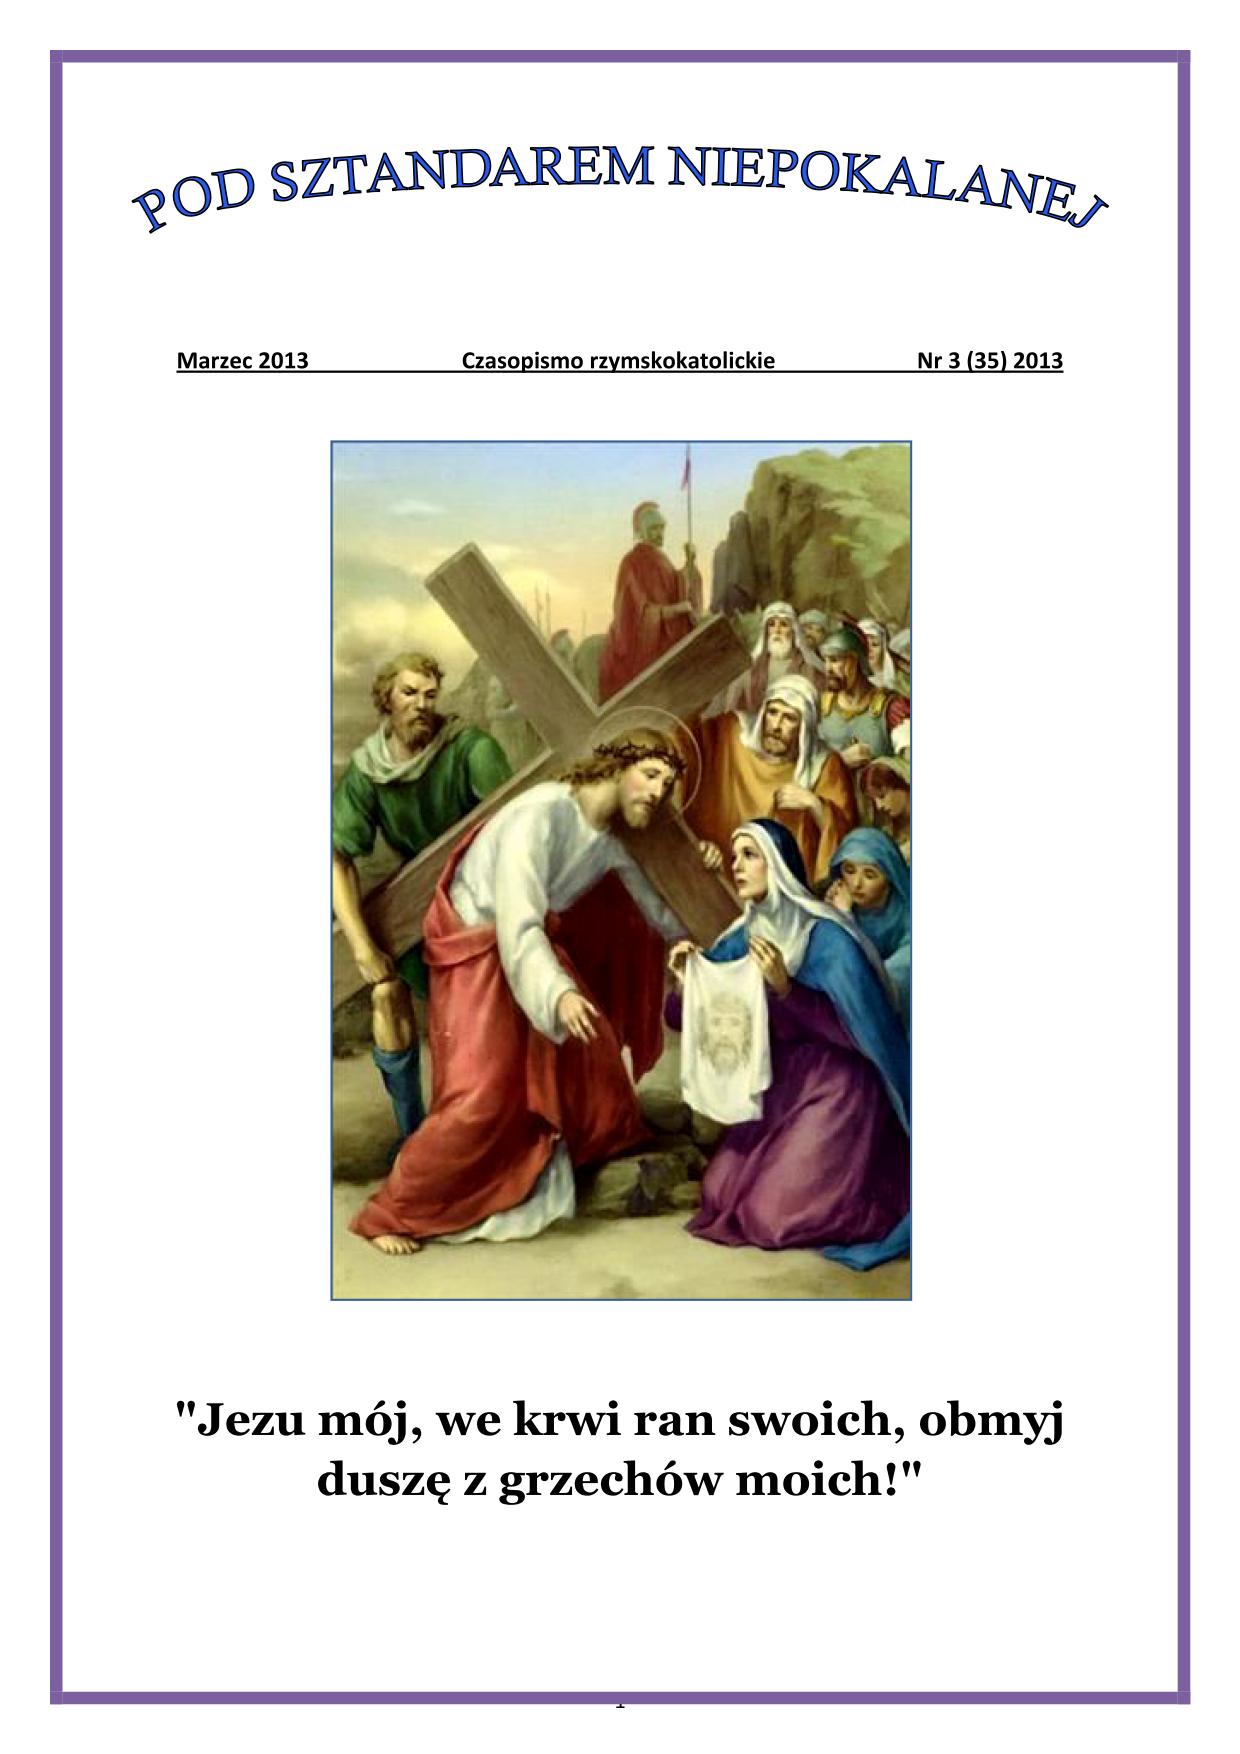 "Pod Sztandarem Niepokalanej". Nr 35. Marzec 2013. Czasopismo rzymskokatolickie.